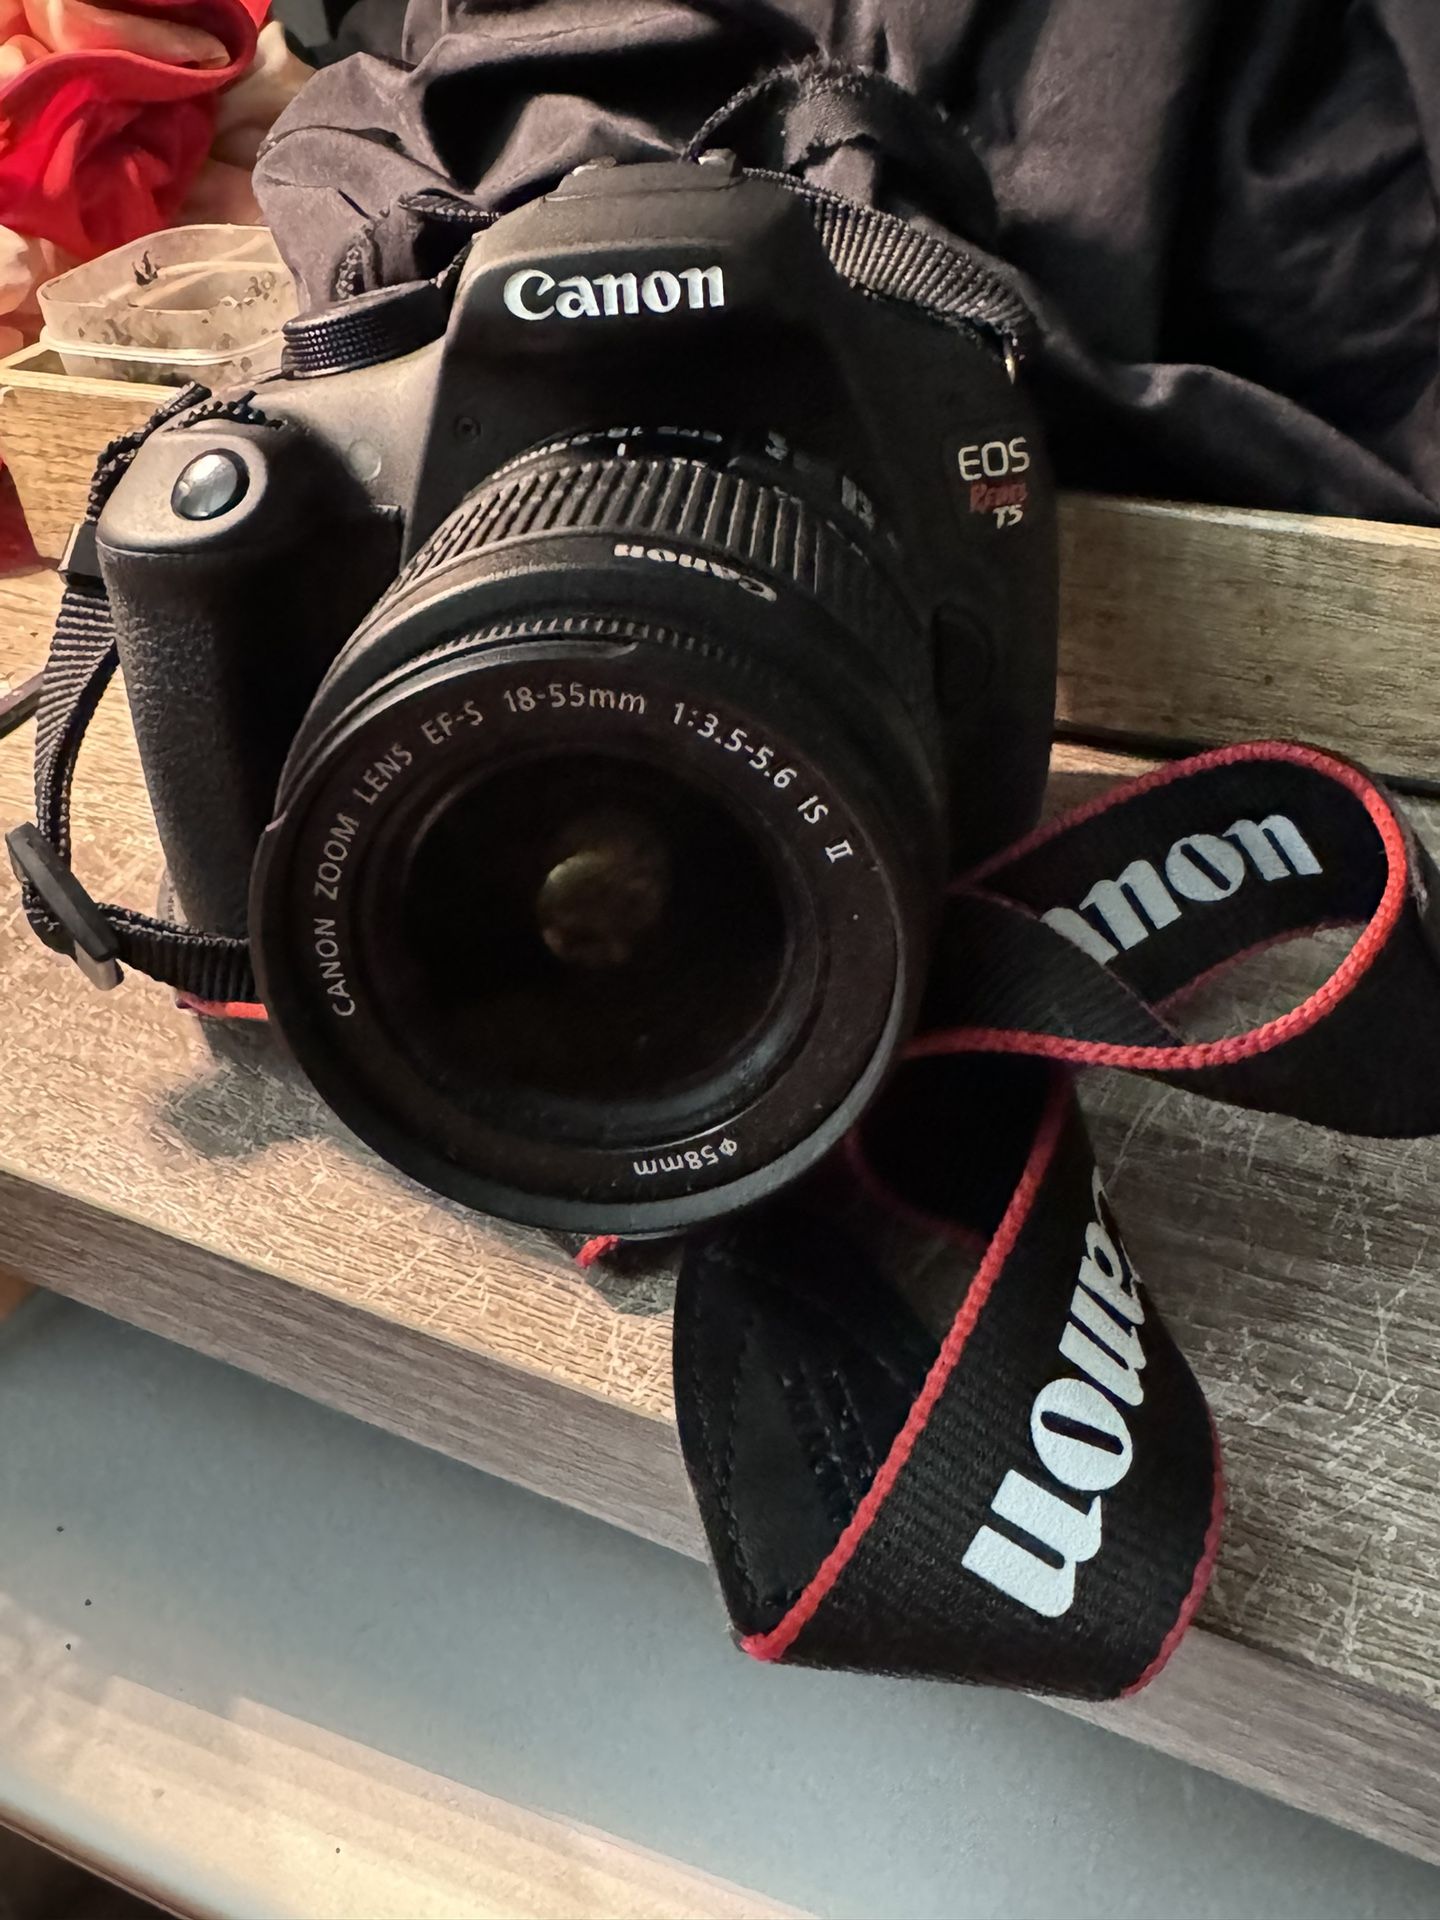 Canon EOS Rebel T5 SLR Camera